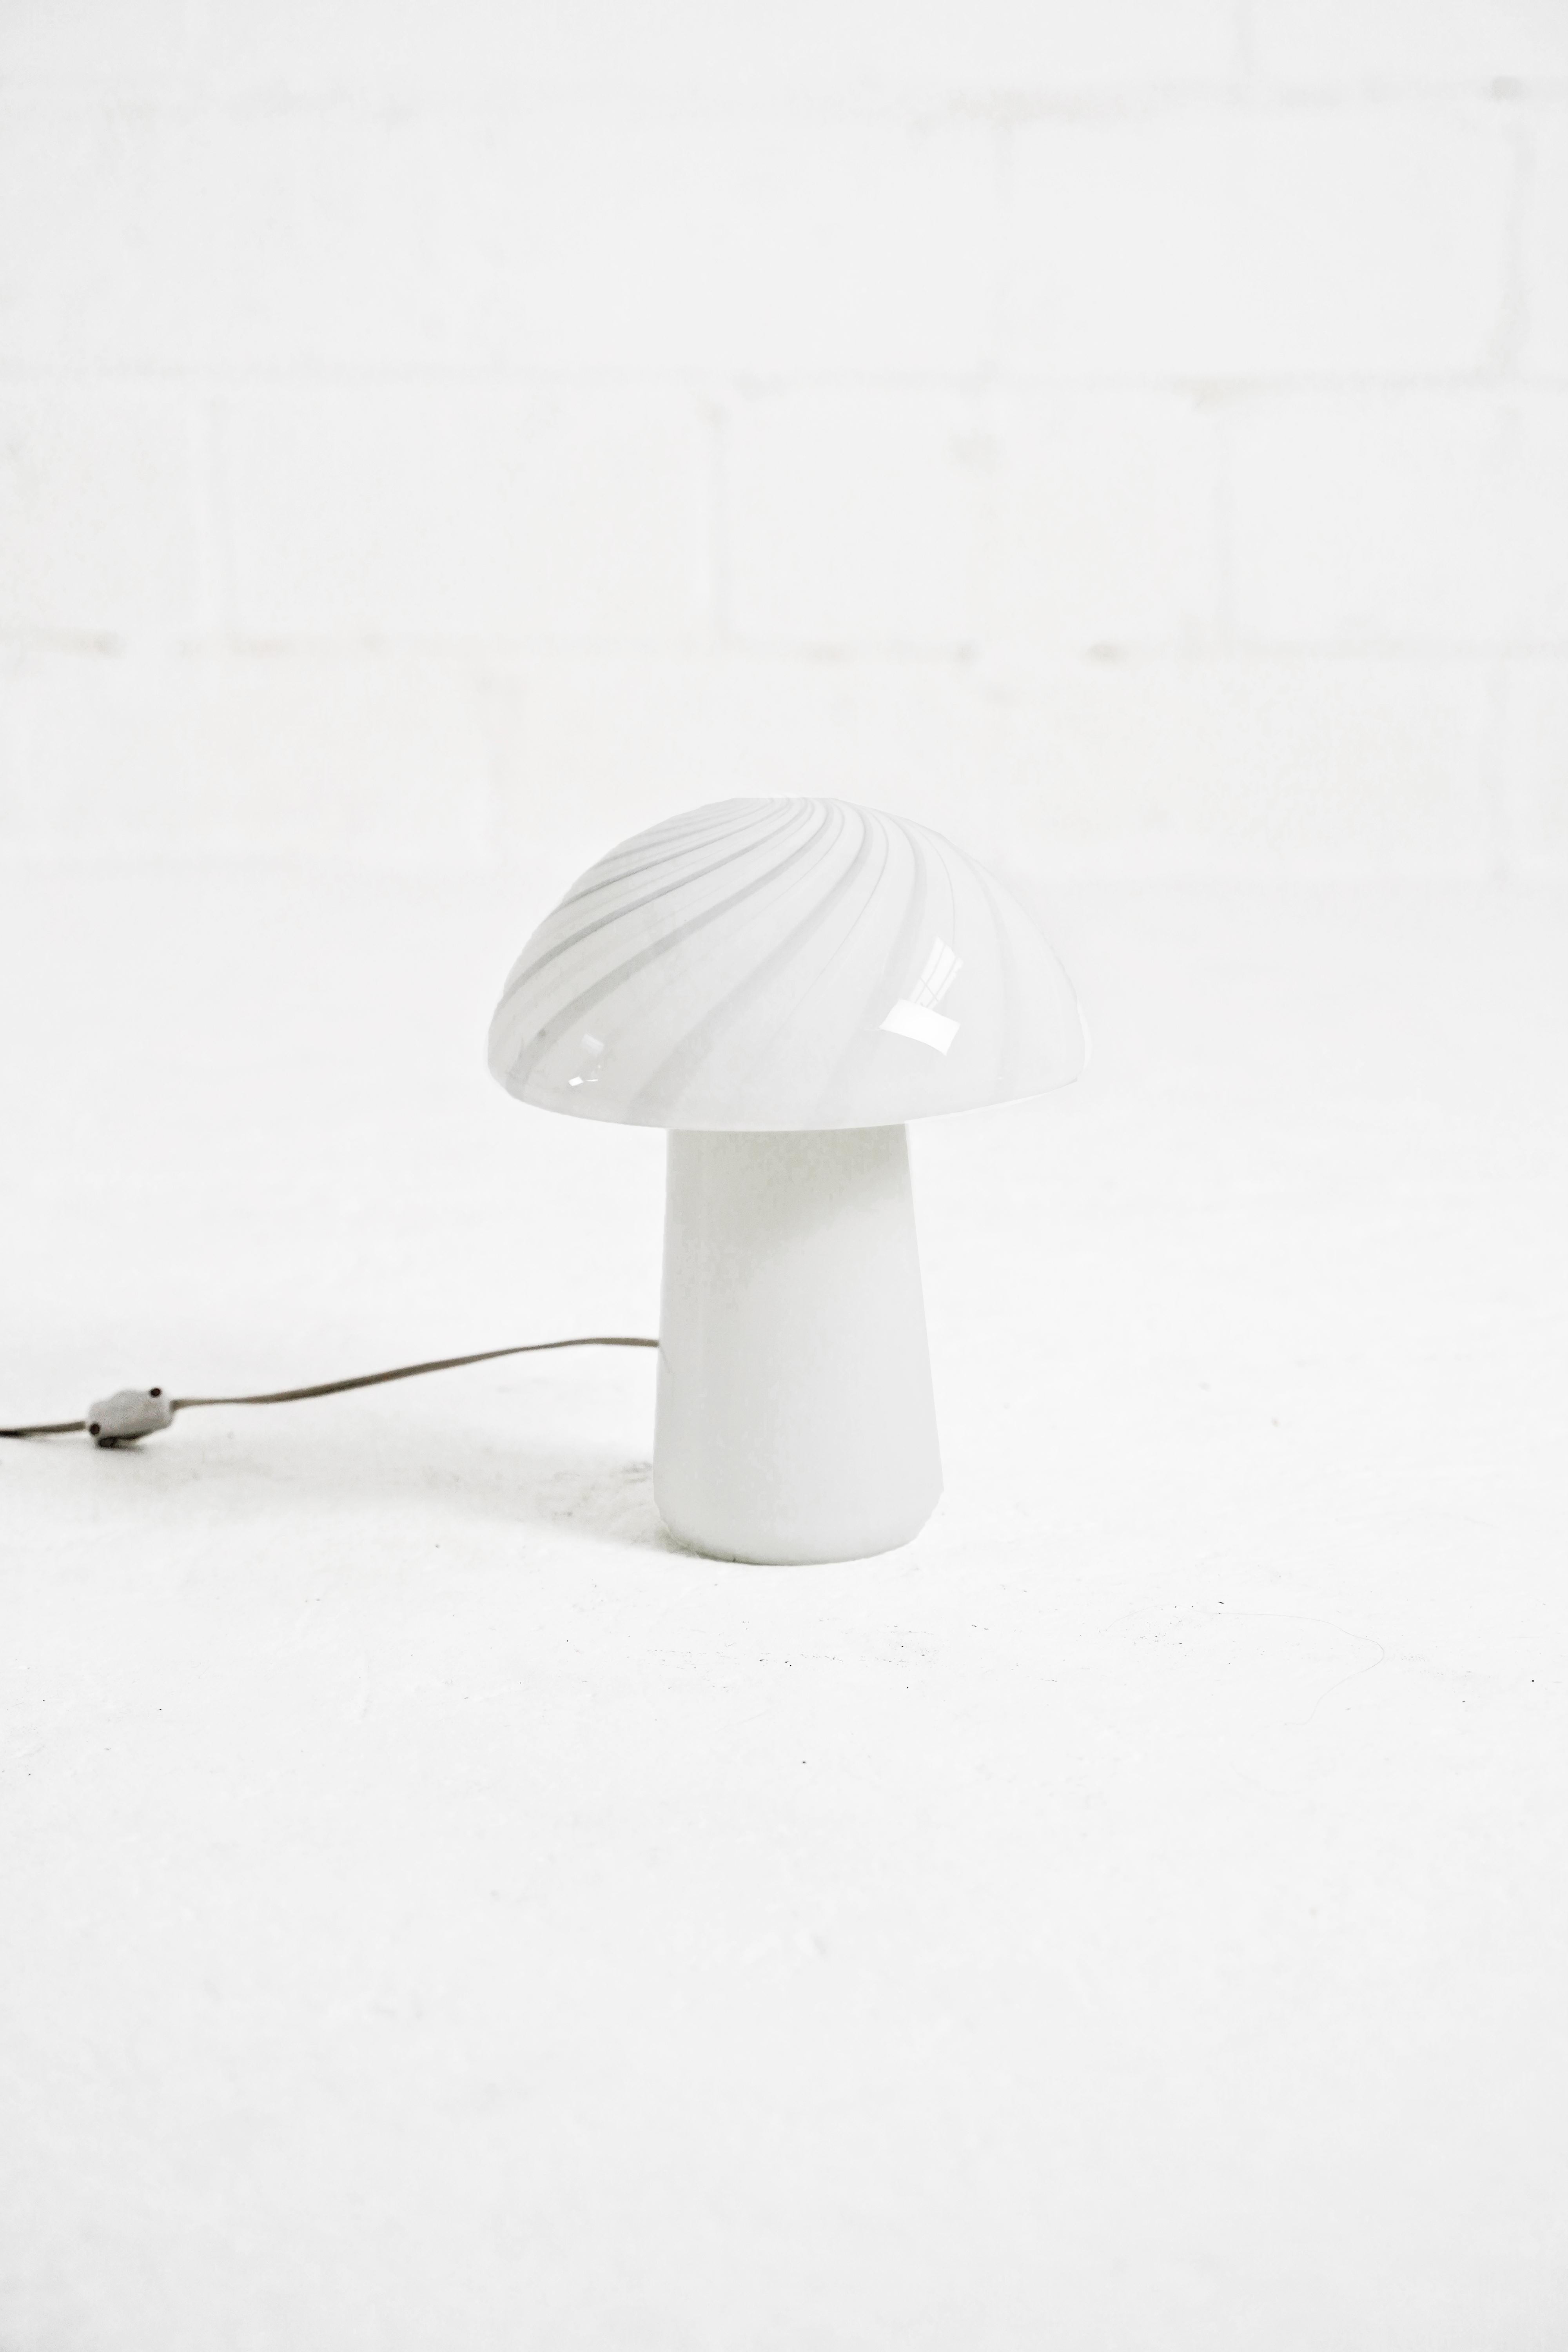 Late 20th Century White Murano Glass Mushroom Lamp